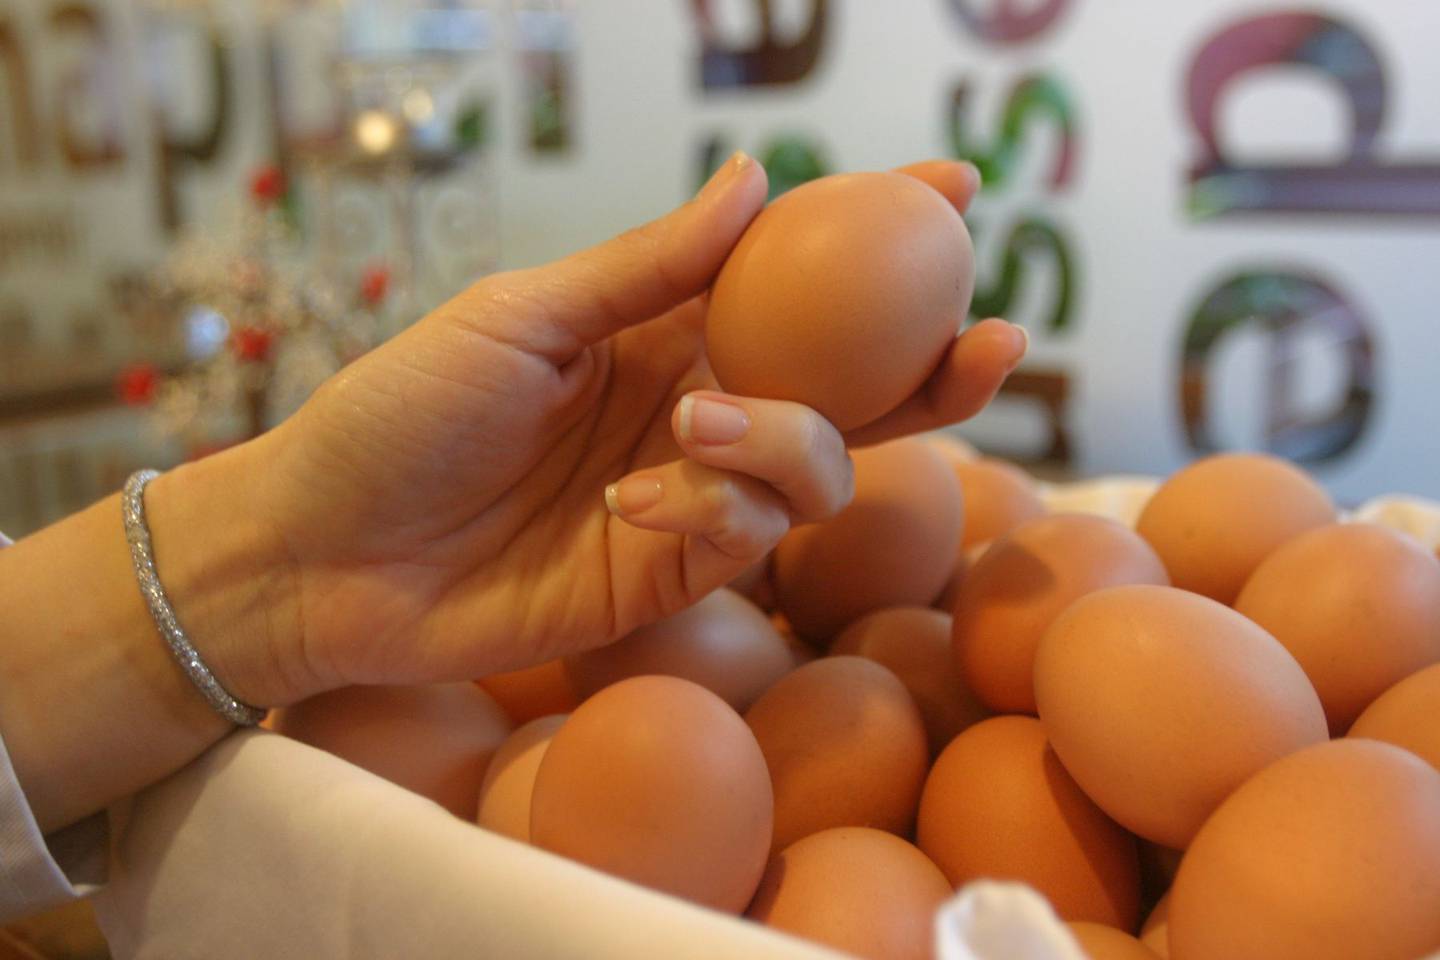 Los huevos frescos de gallina están incluidos en la iniciativa que verá hoy la Comisión de Economía, para que estos y otros cuatro productos sean exonerados del IGV.dfd